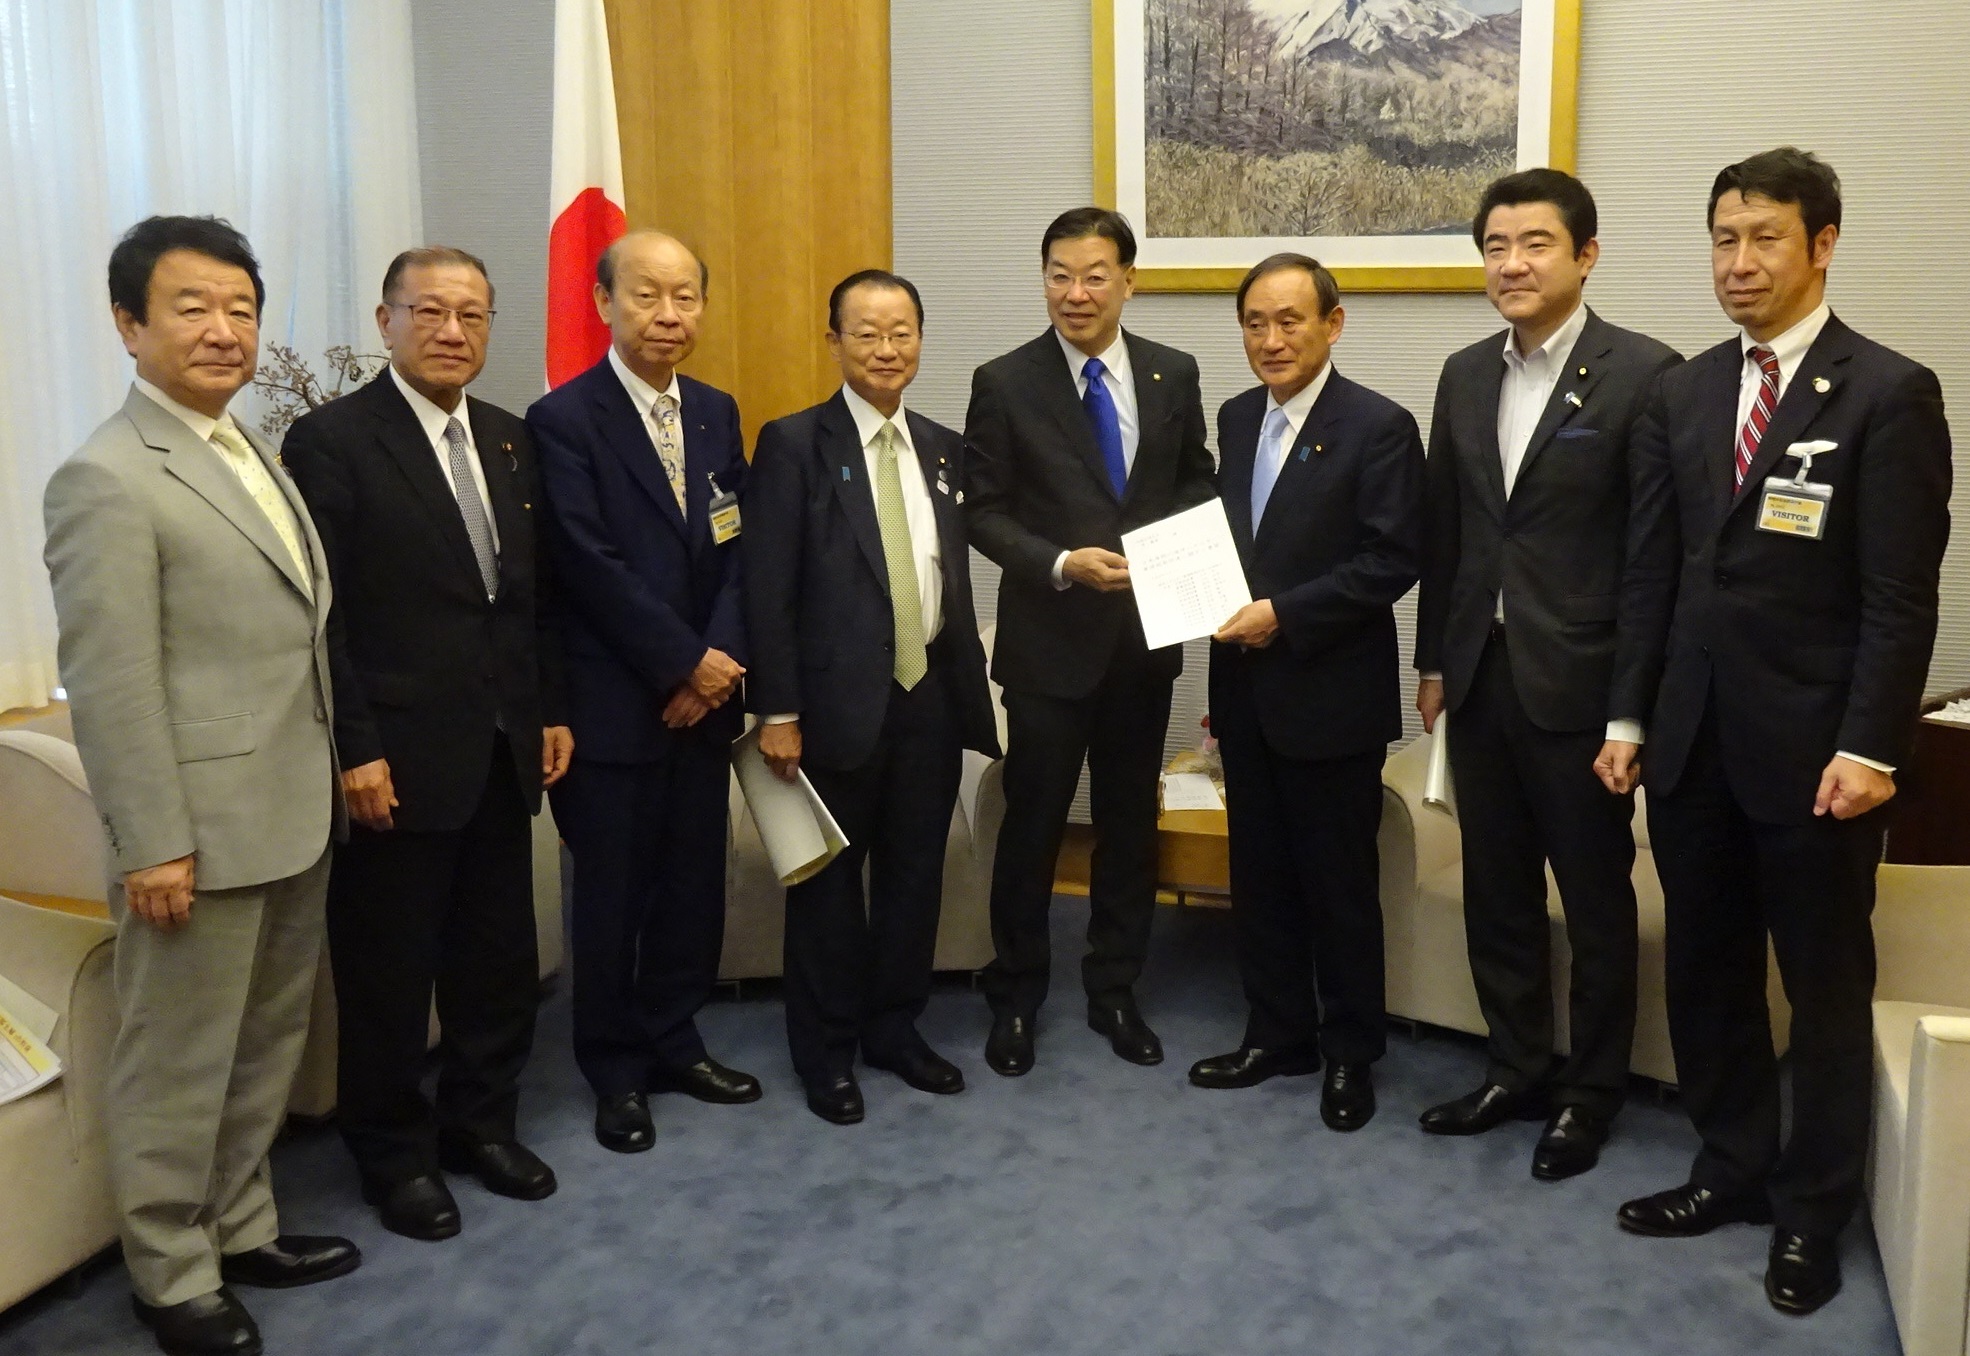 首相官邸 経済産業省への要望を行いました 海洋エネルギー資源開発促進日本海連合